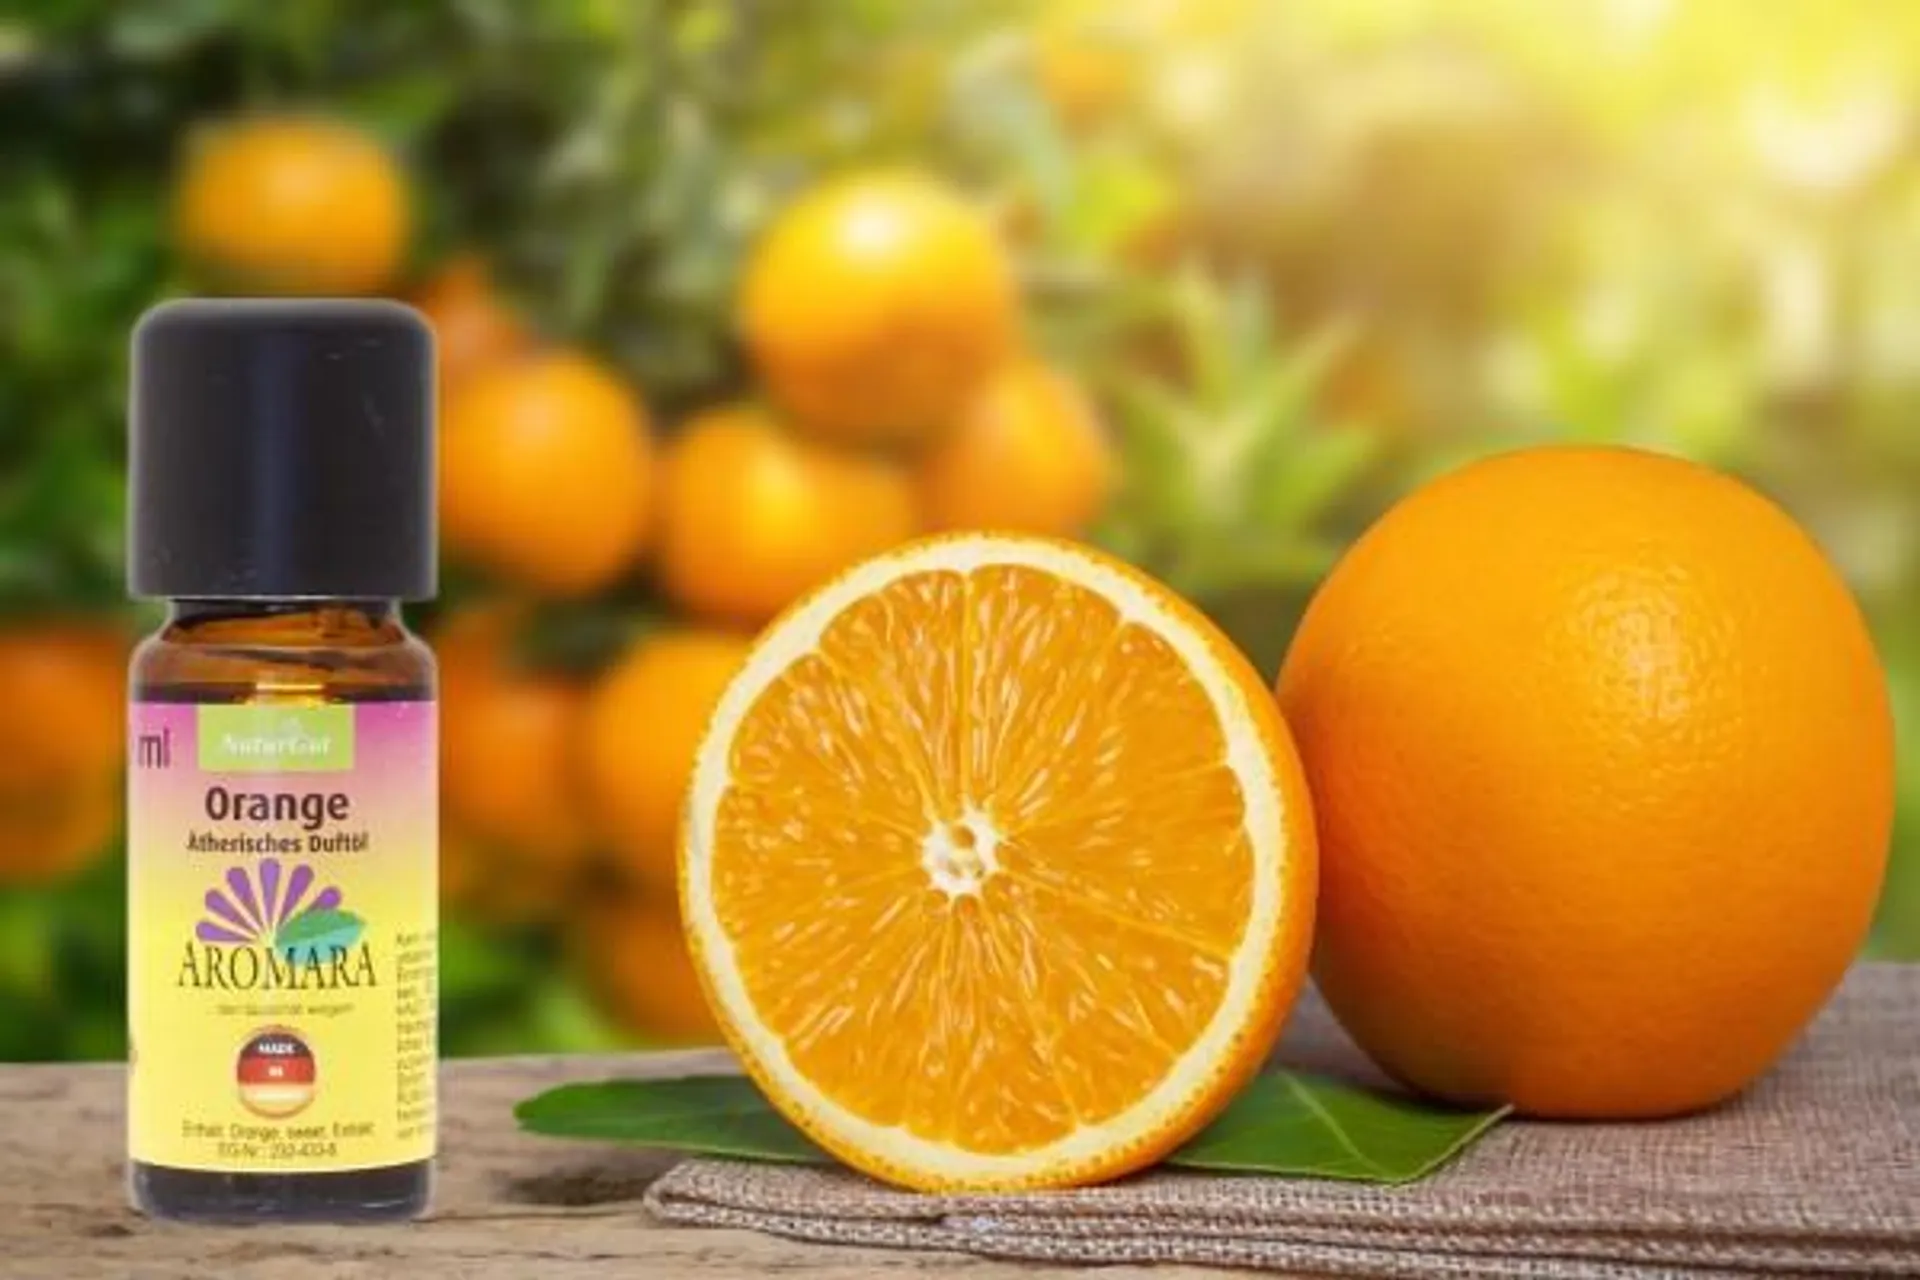 AROMARA Ätherisches Duftöl Orange / Citrus aurantium dulcis 20 ml